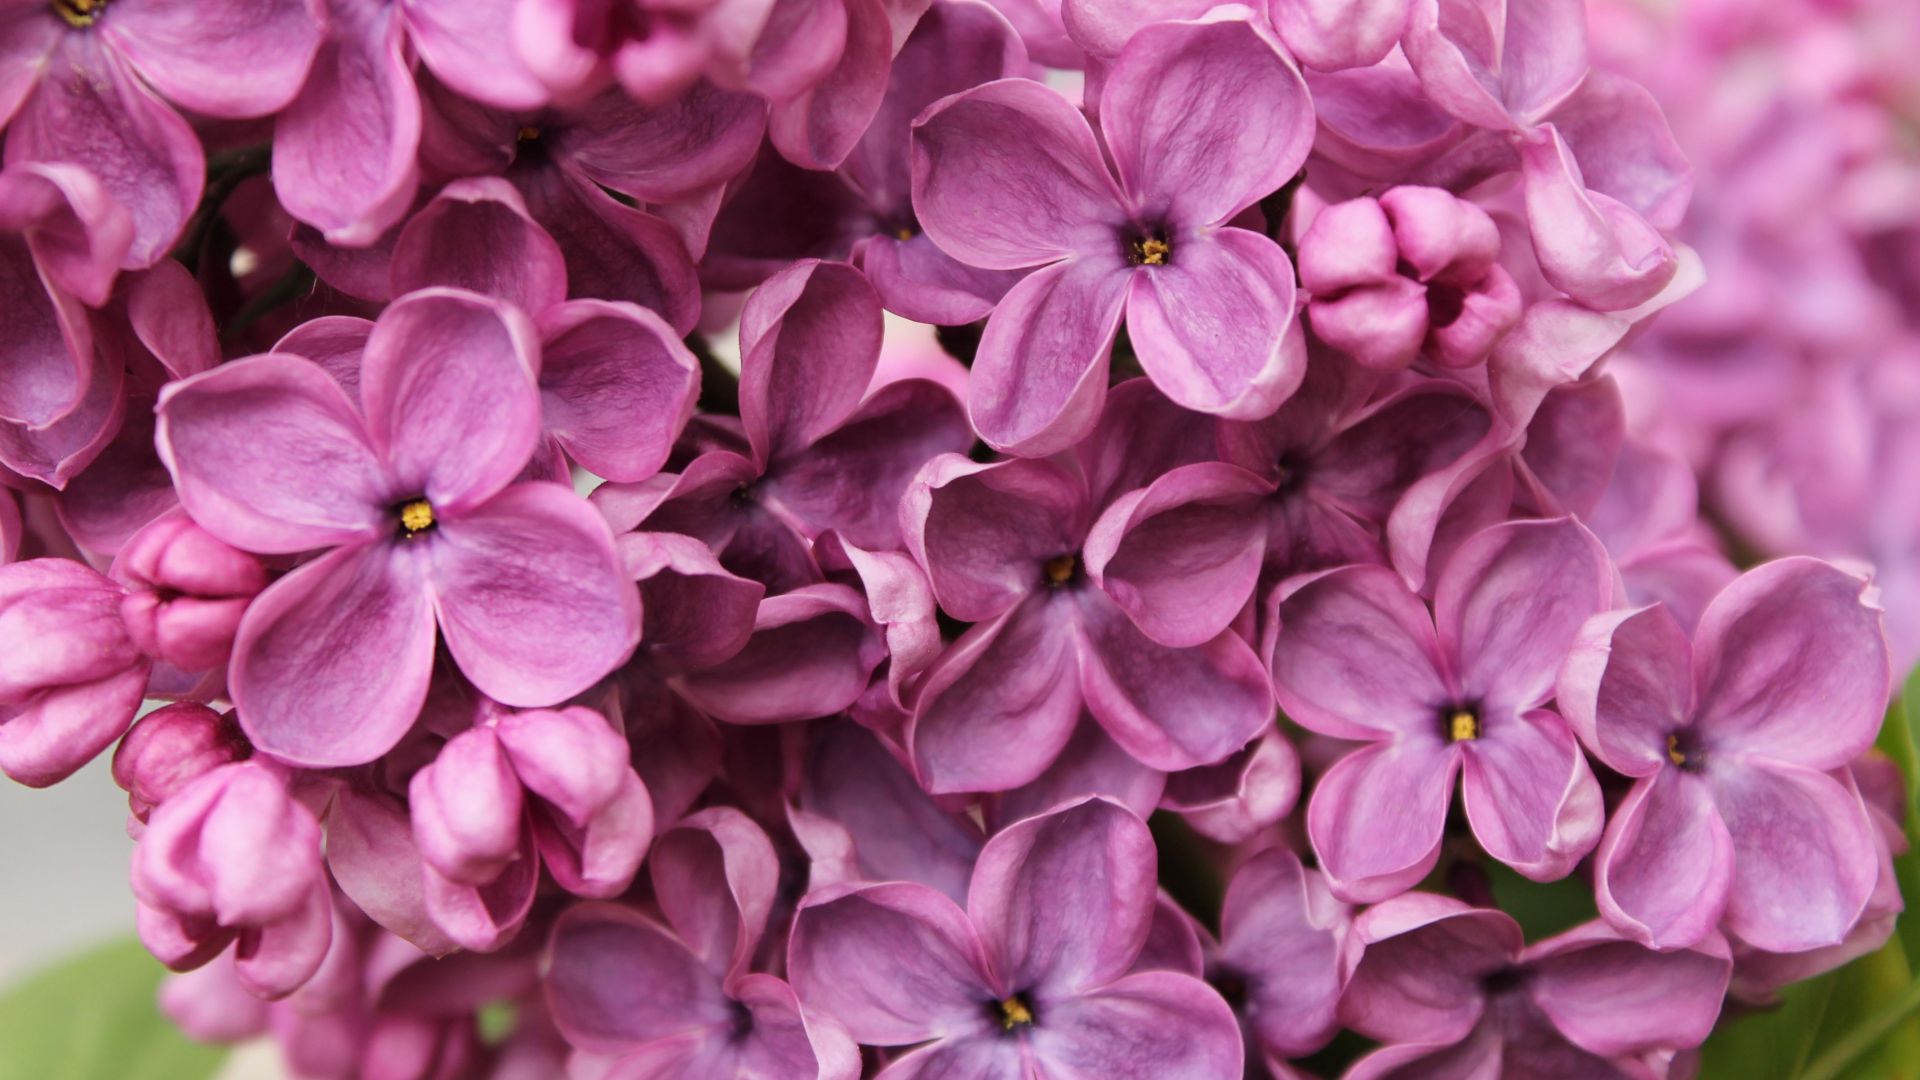 Сирень, 4k, 5k, цветы, фиолетовый, макро, Lilac, 4k, 5k wallpaper, flowers, purple, macro (horizontal)